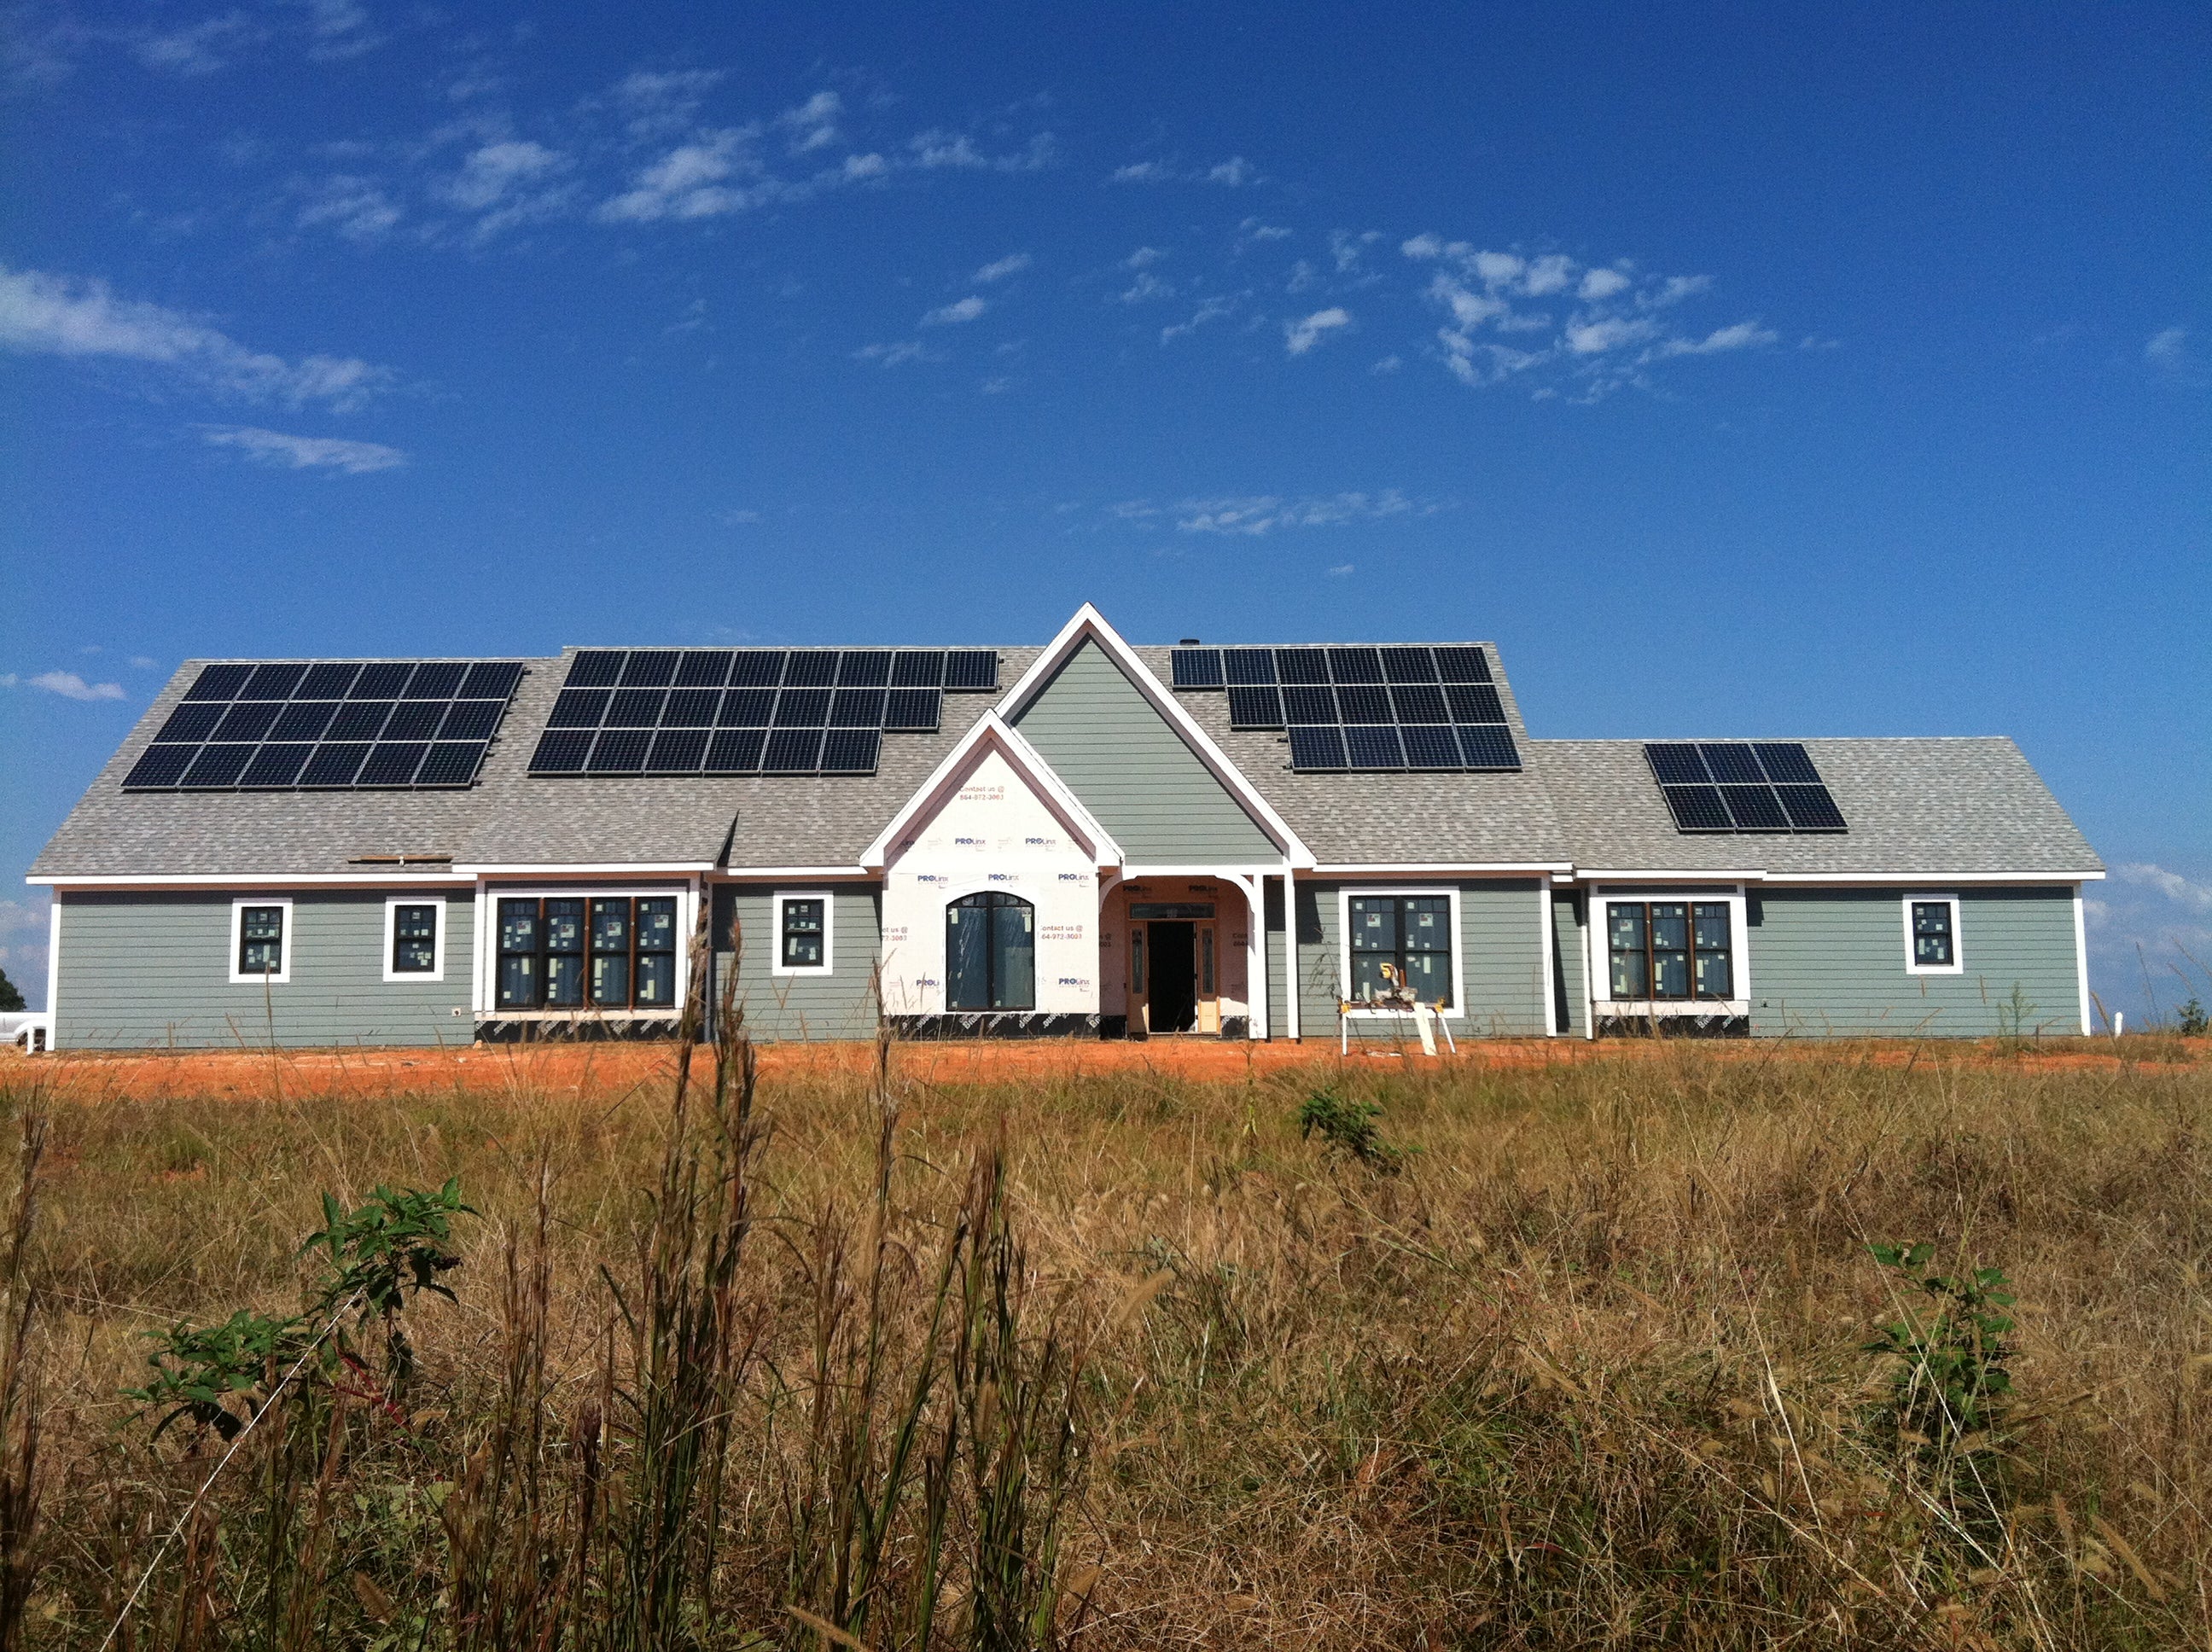 Sunstore Solar solar reviews, complaints, address & solar panels cost